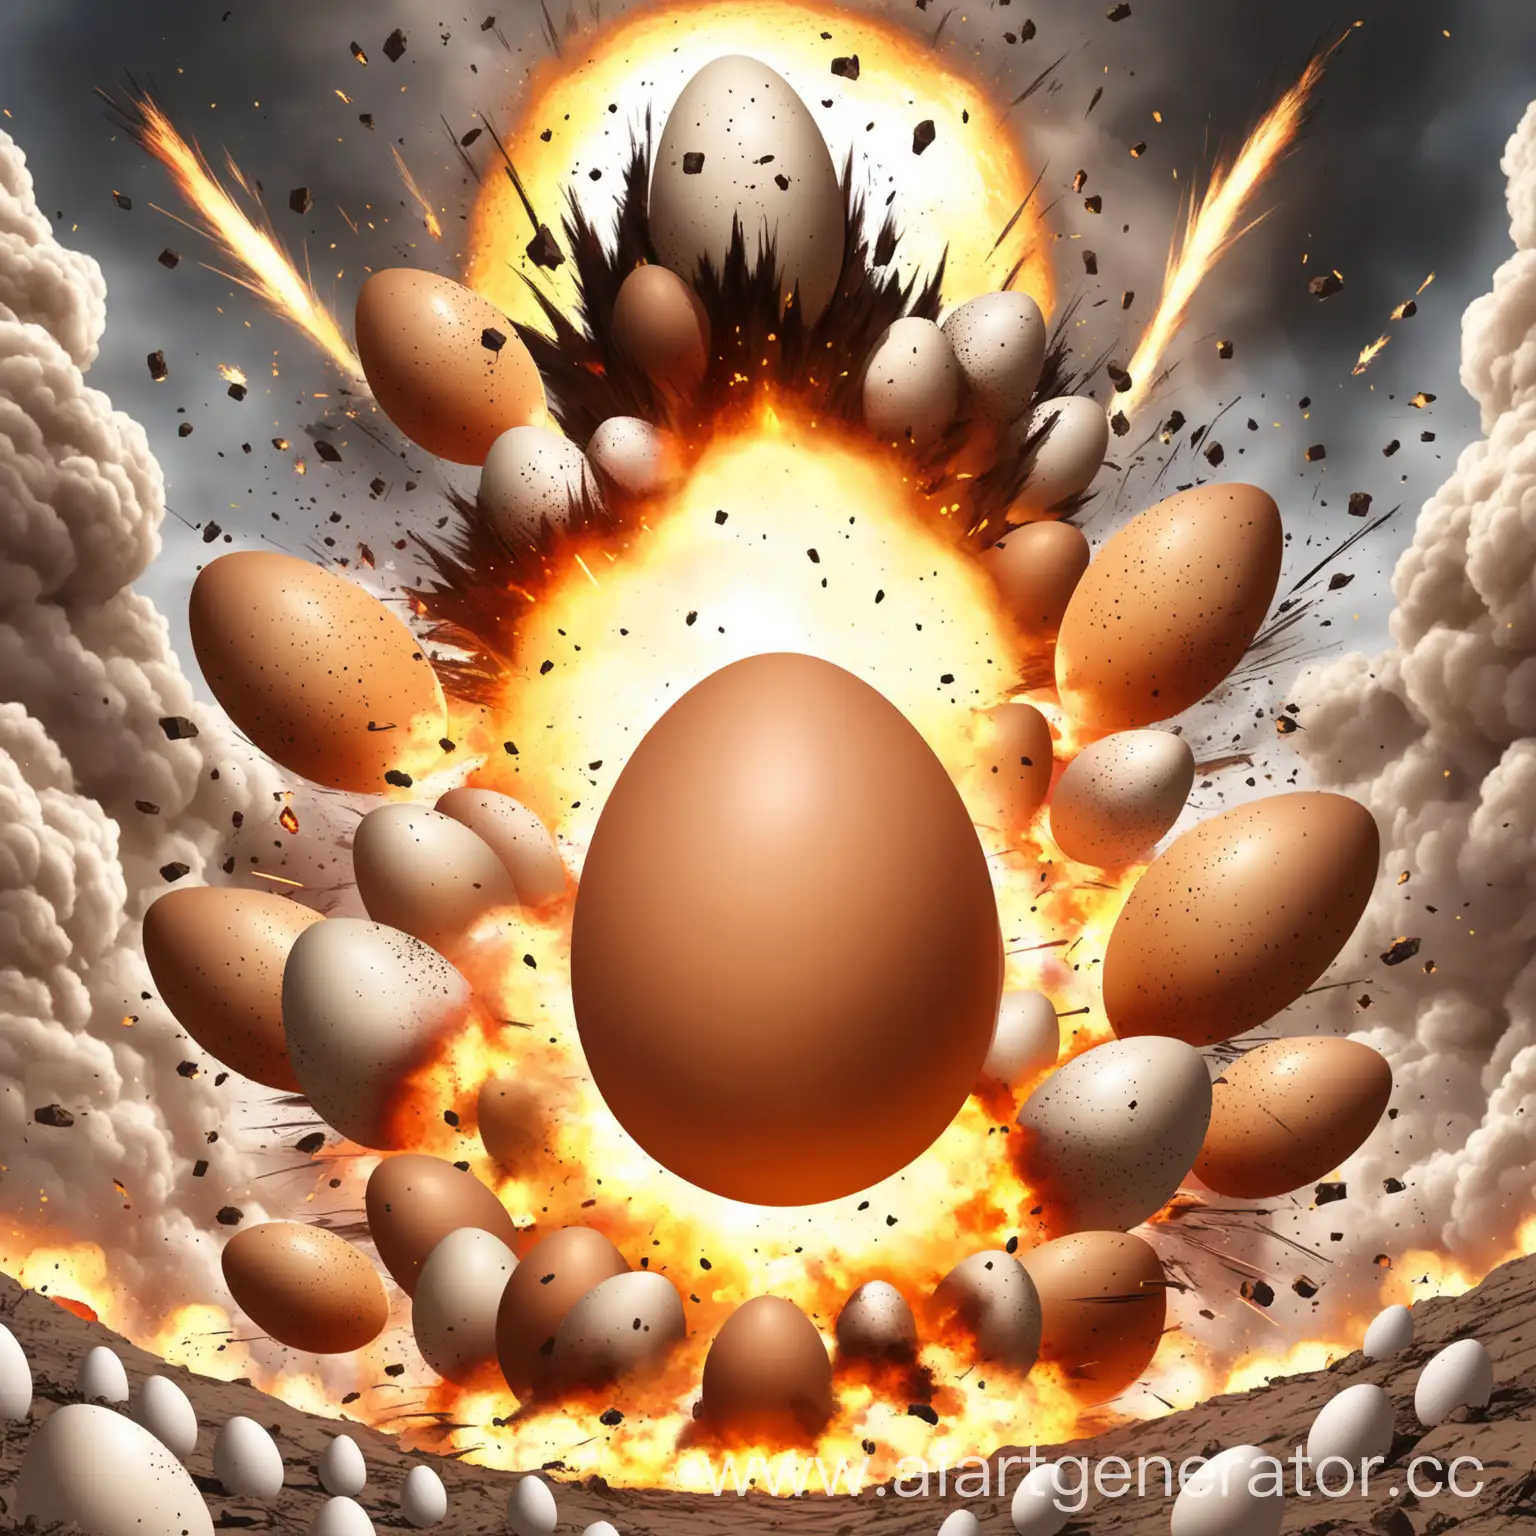 яйцо а за ним эпичные взрывы